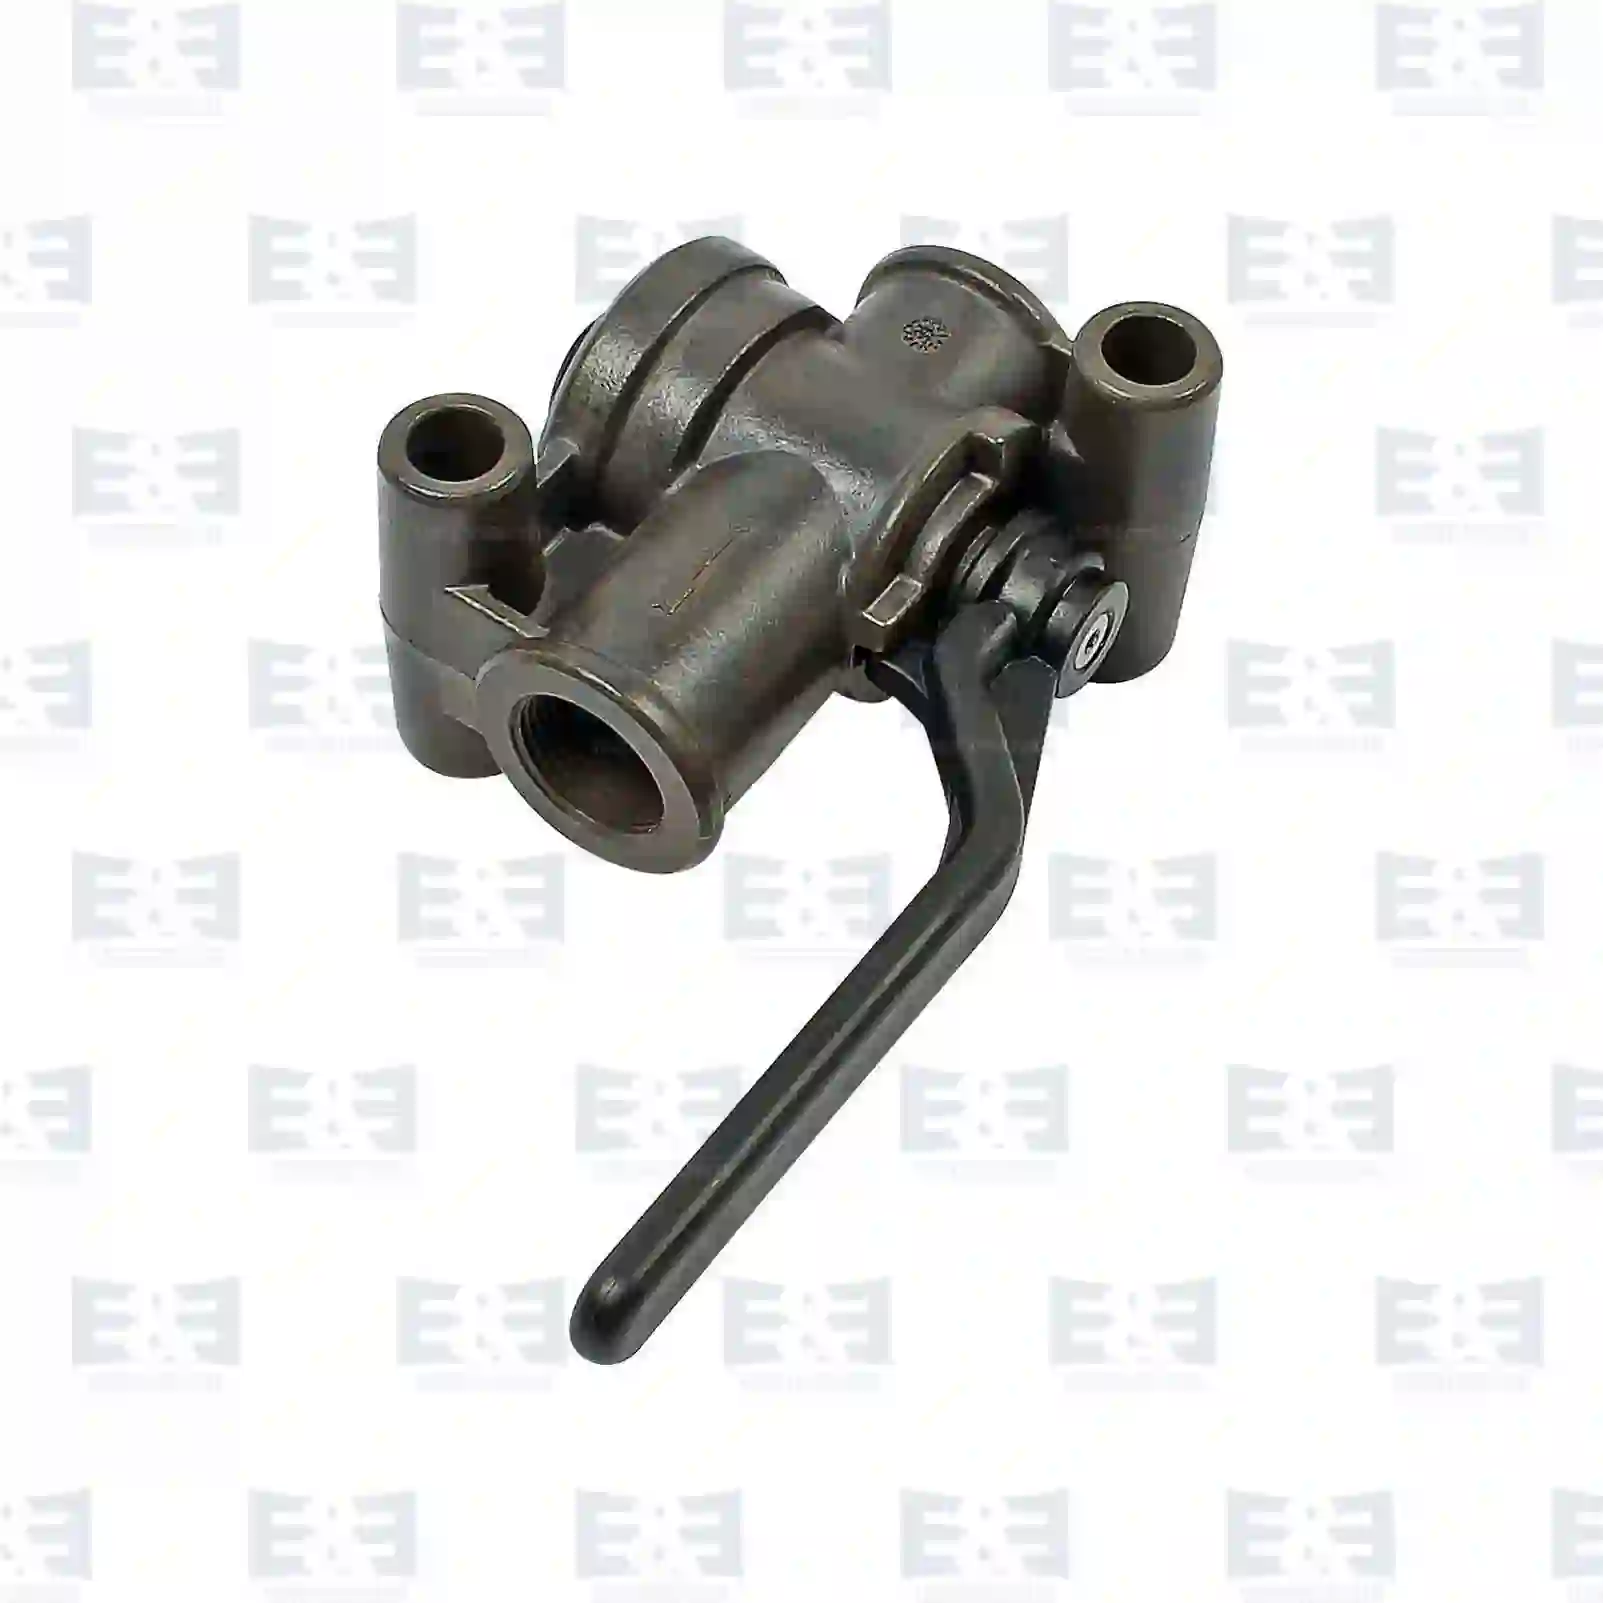  Shut off valve || E&E Truck Spare Parts | Truck Spare Parts, Auotomotive Spare Parts